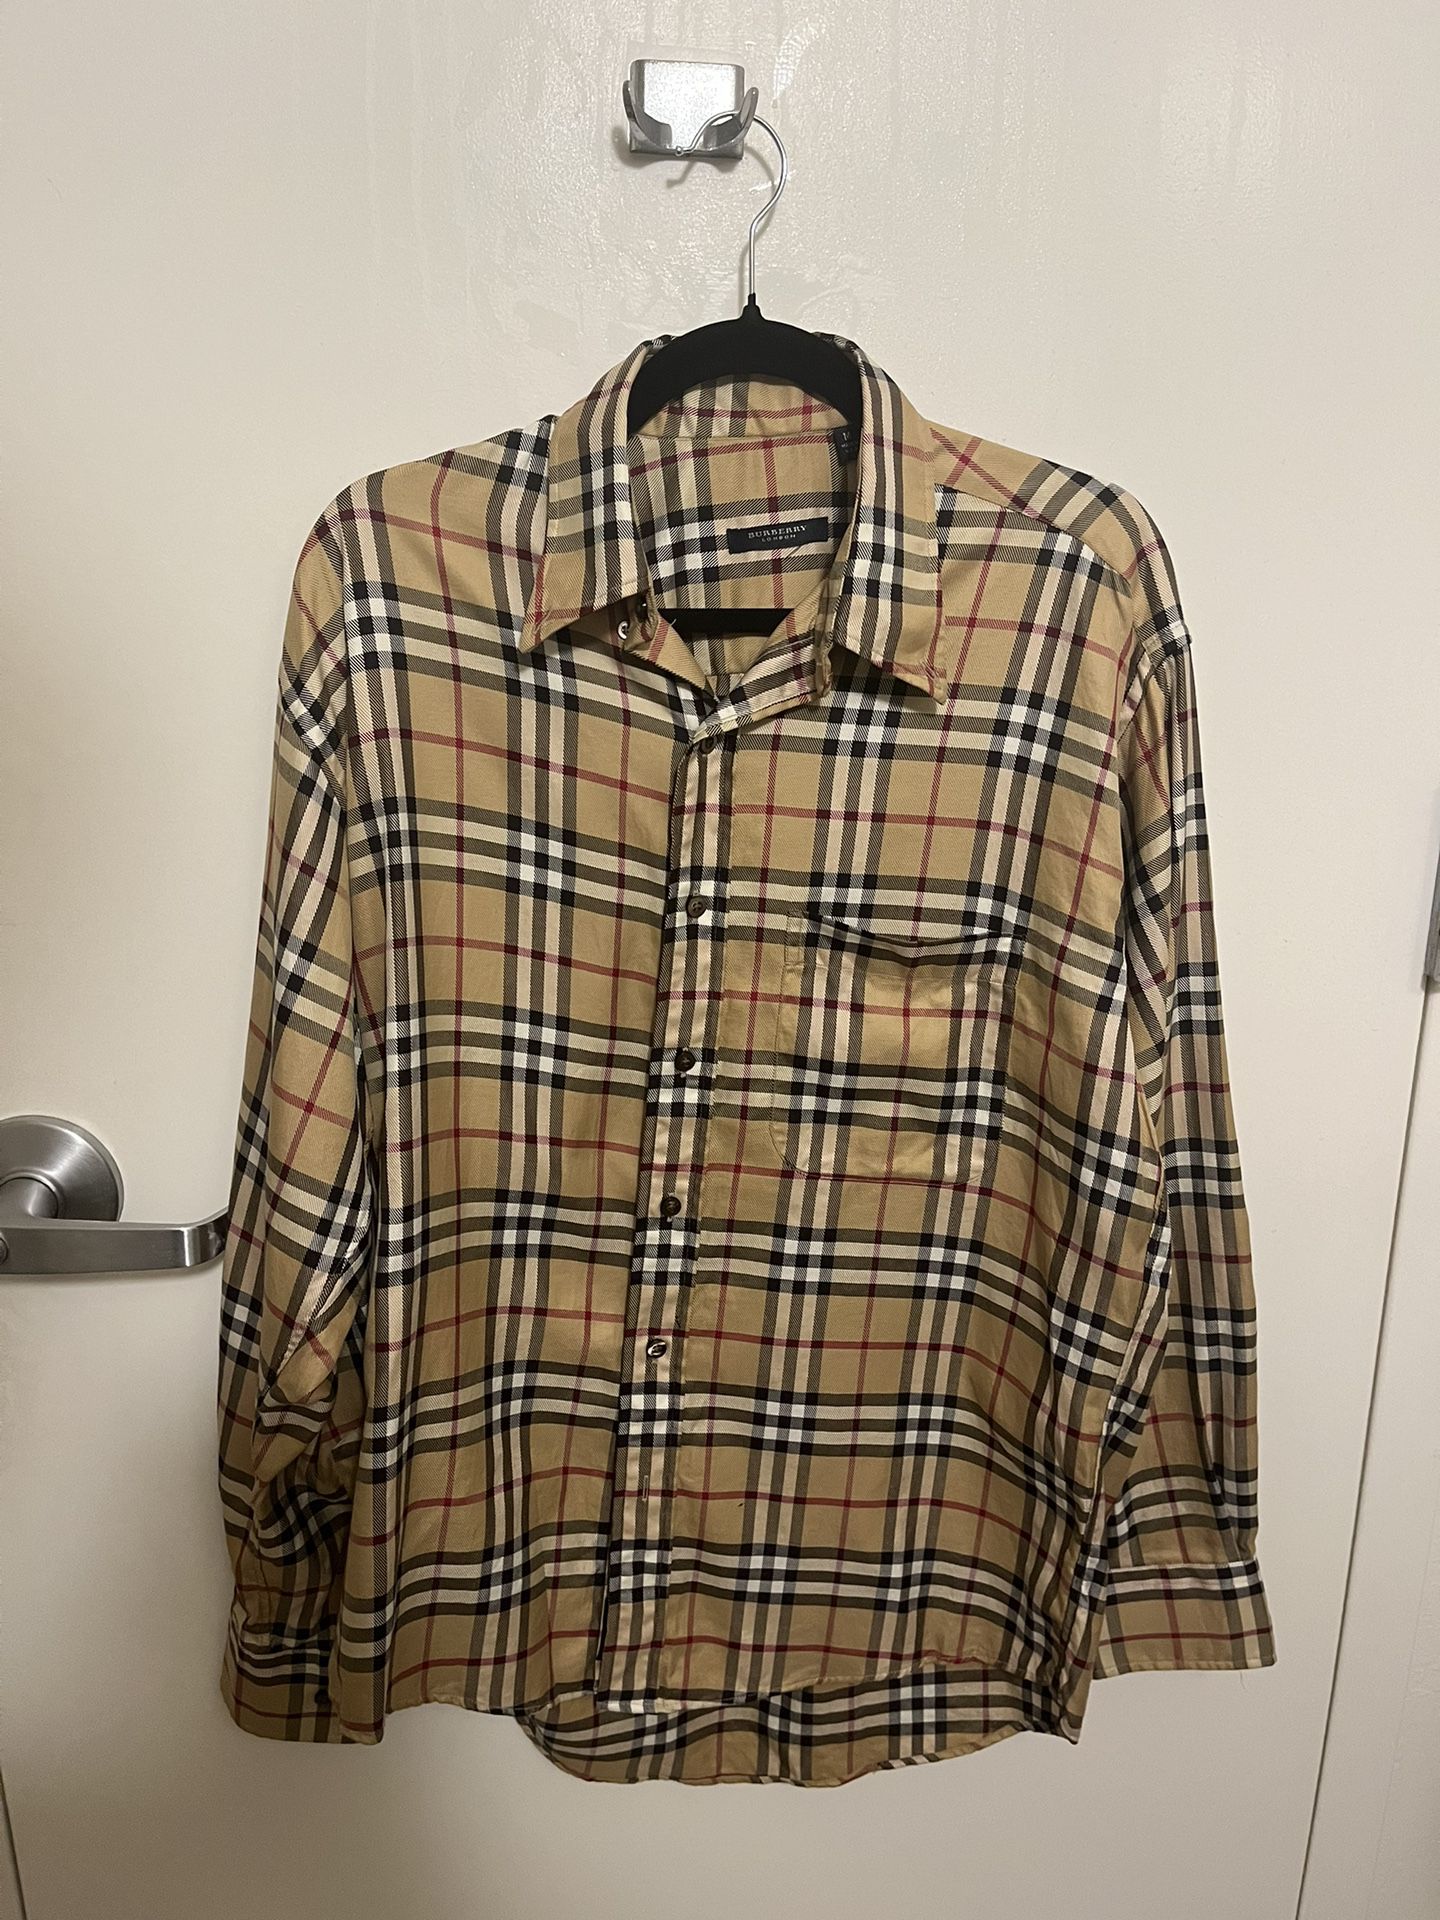 Burberry Dress Shirt size M